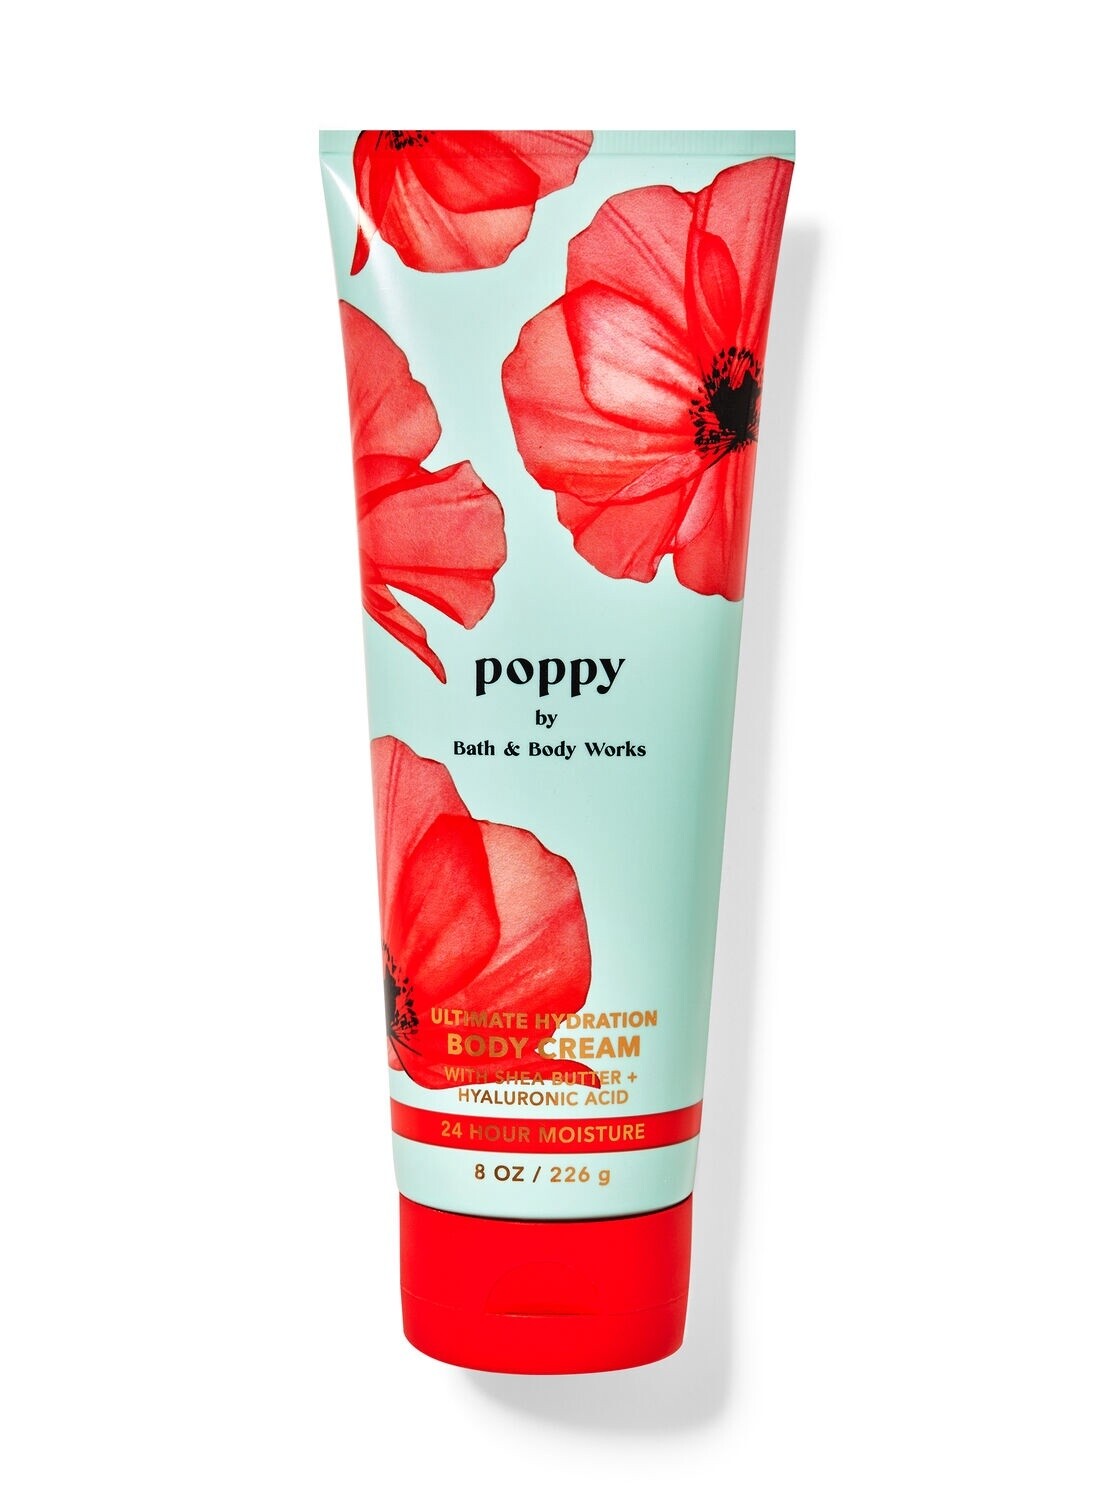 Poppy body cream